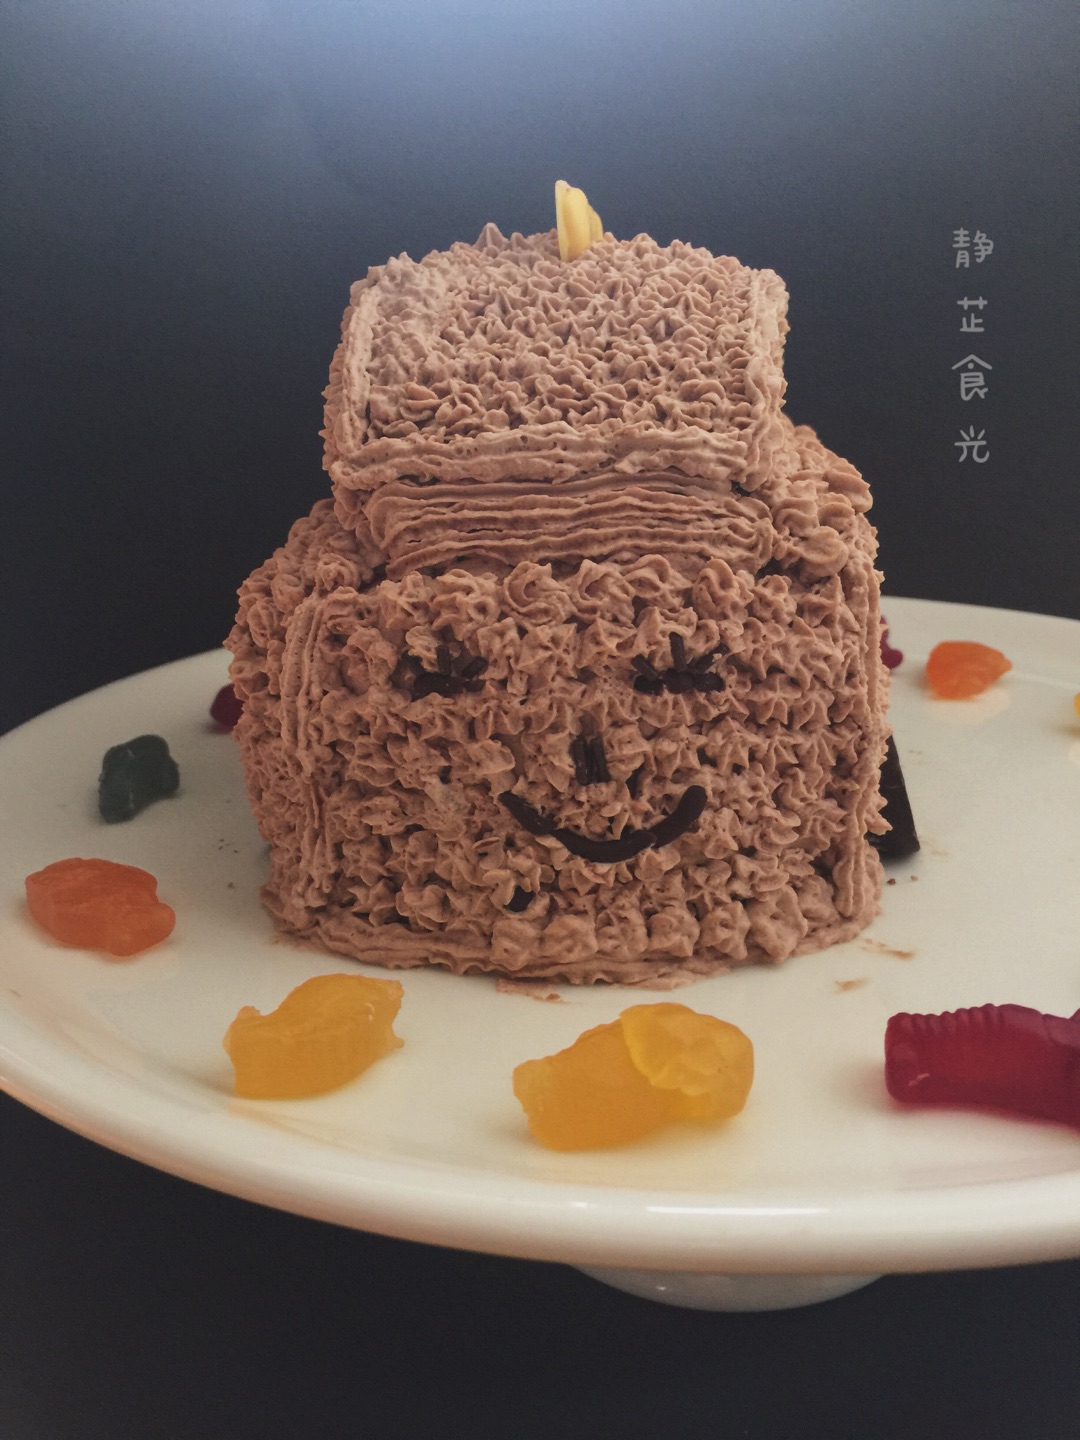 特濃巧克力杯子蛋糕 by Daruma 達磨小廚房 - 愛料理